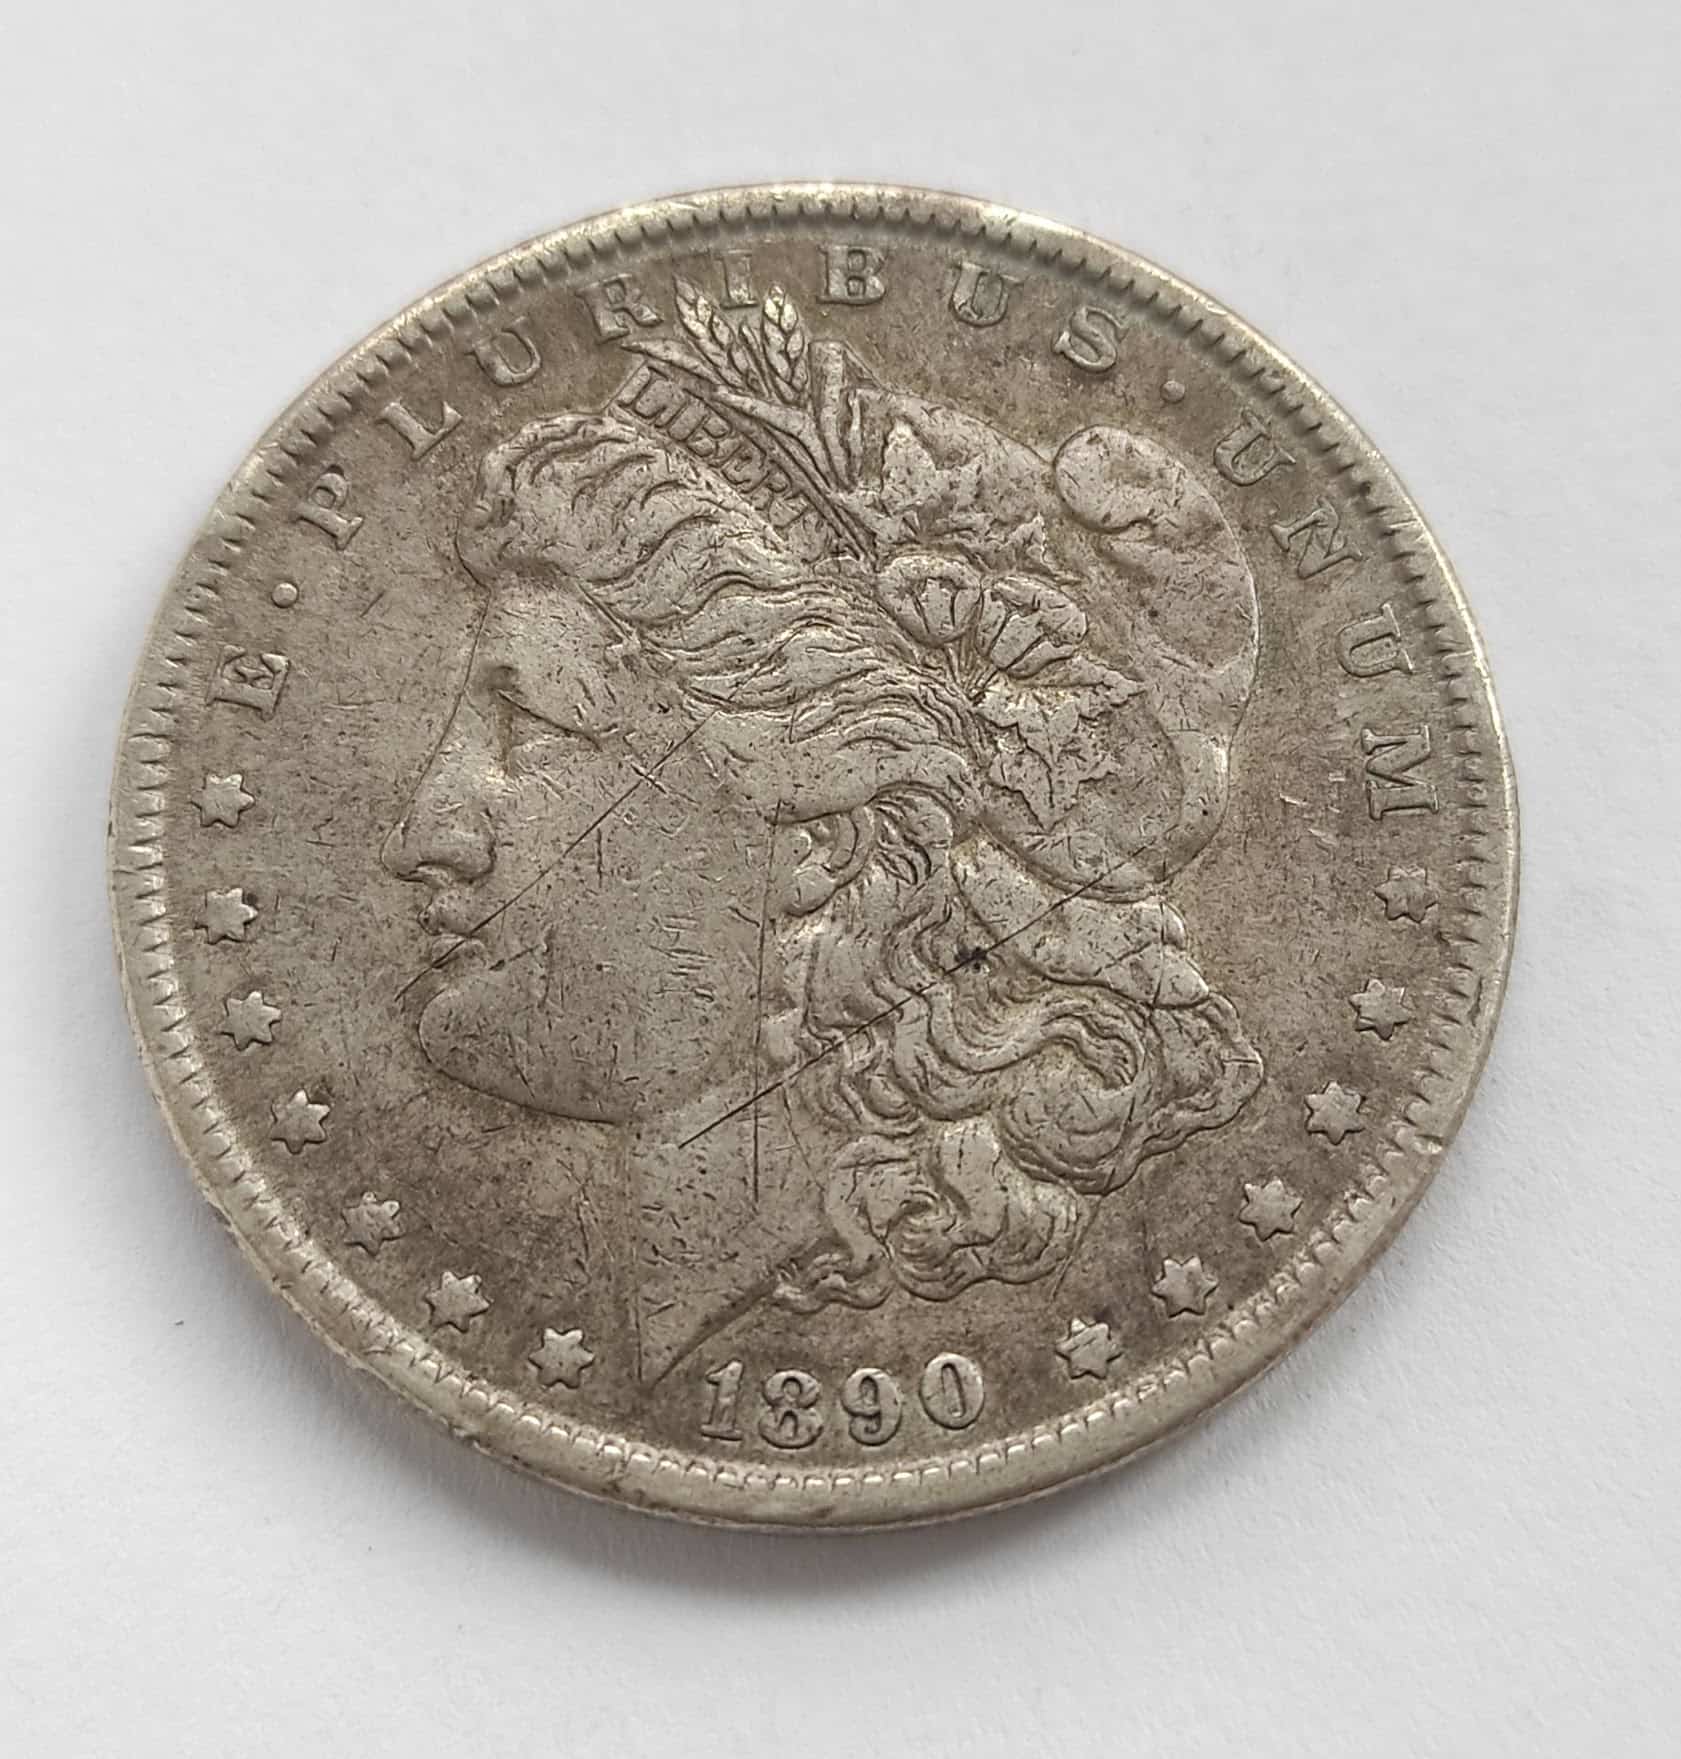 1 dollar 1890